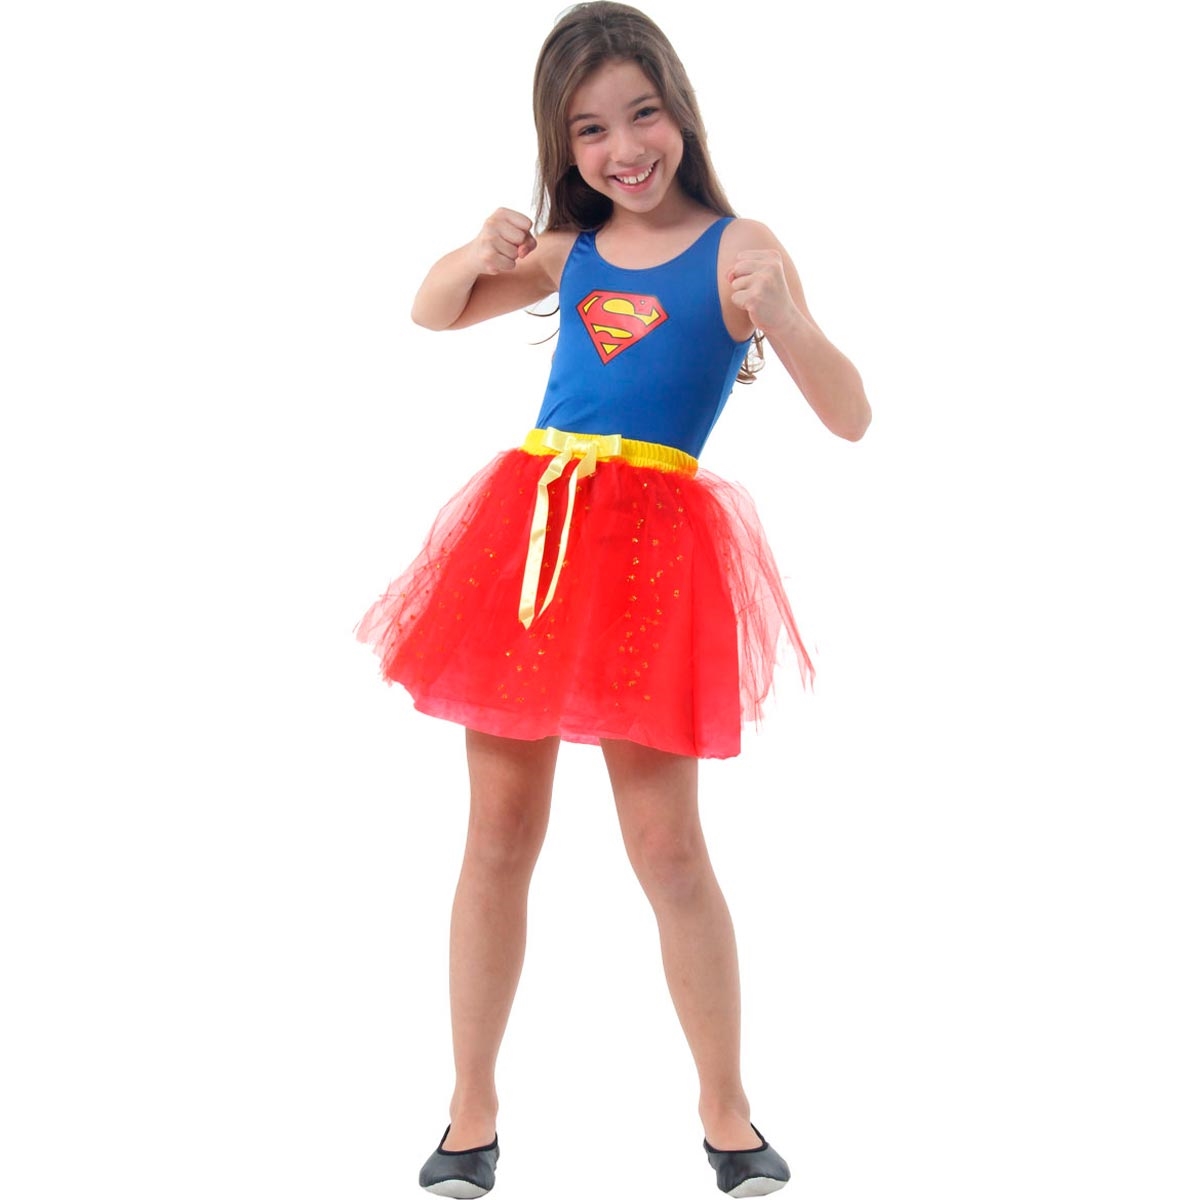 Fantasia Super Mulher Infantil Dress Up